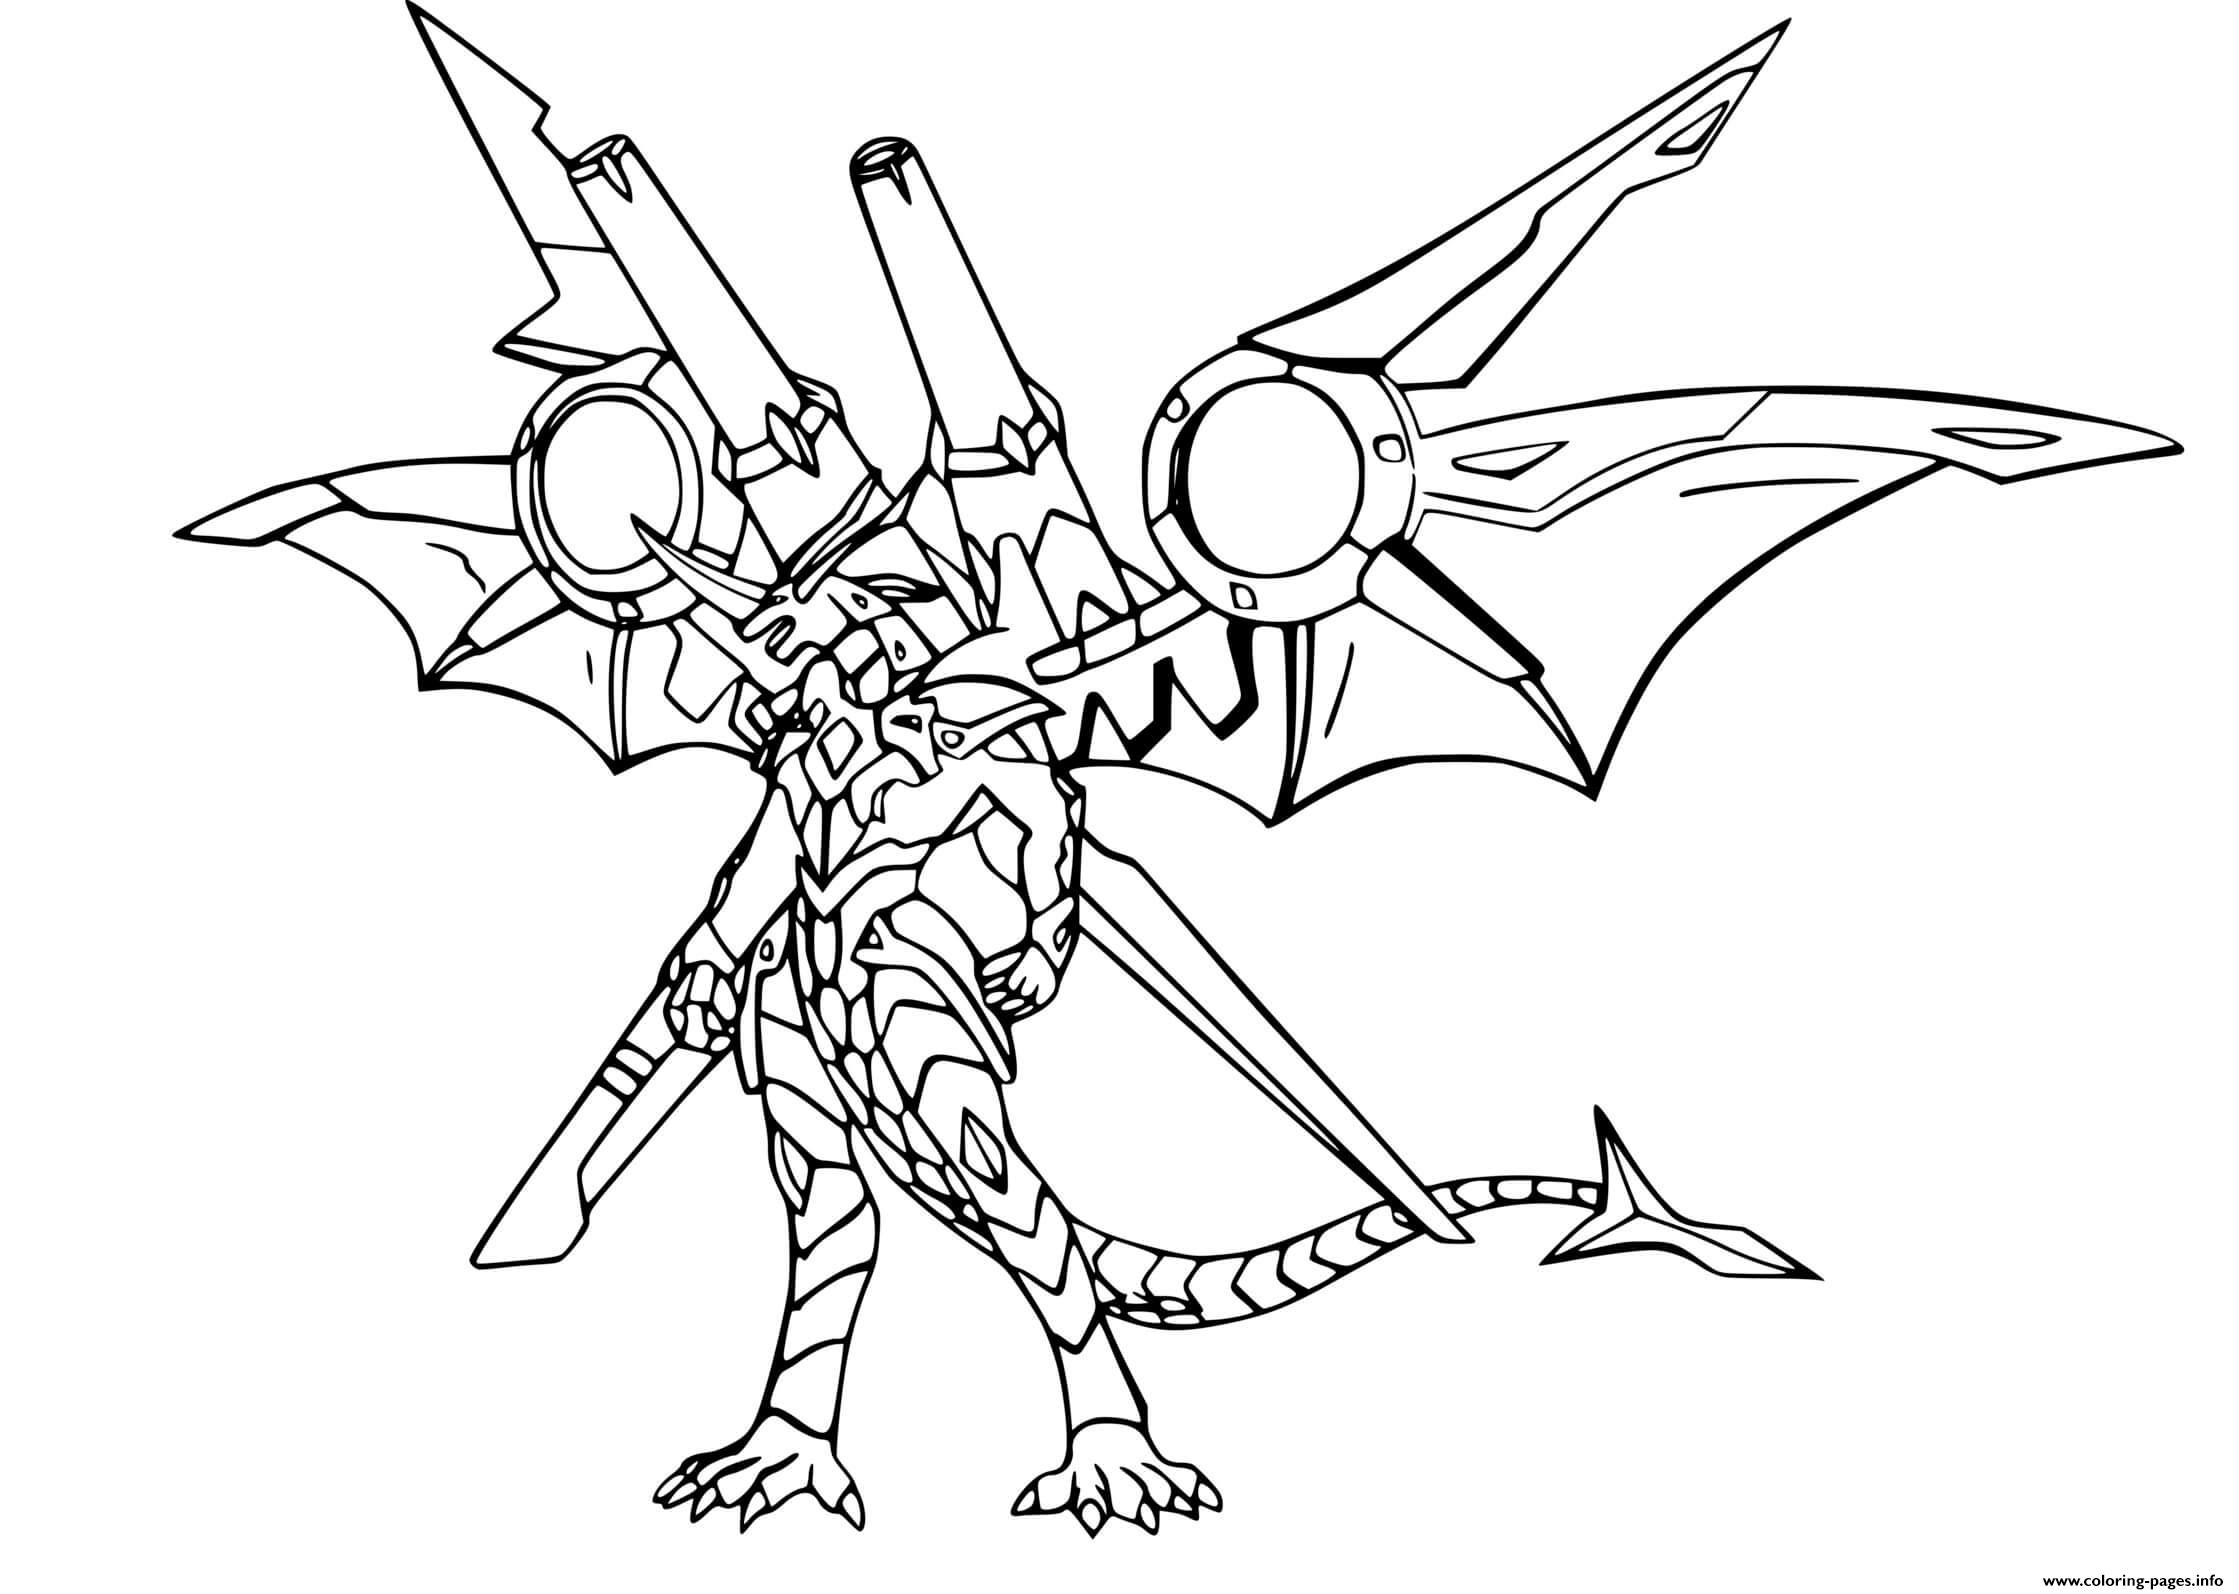 Bakugan Drago Avec Armes coloring